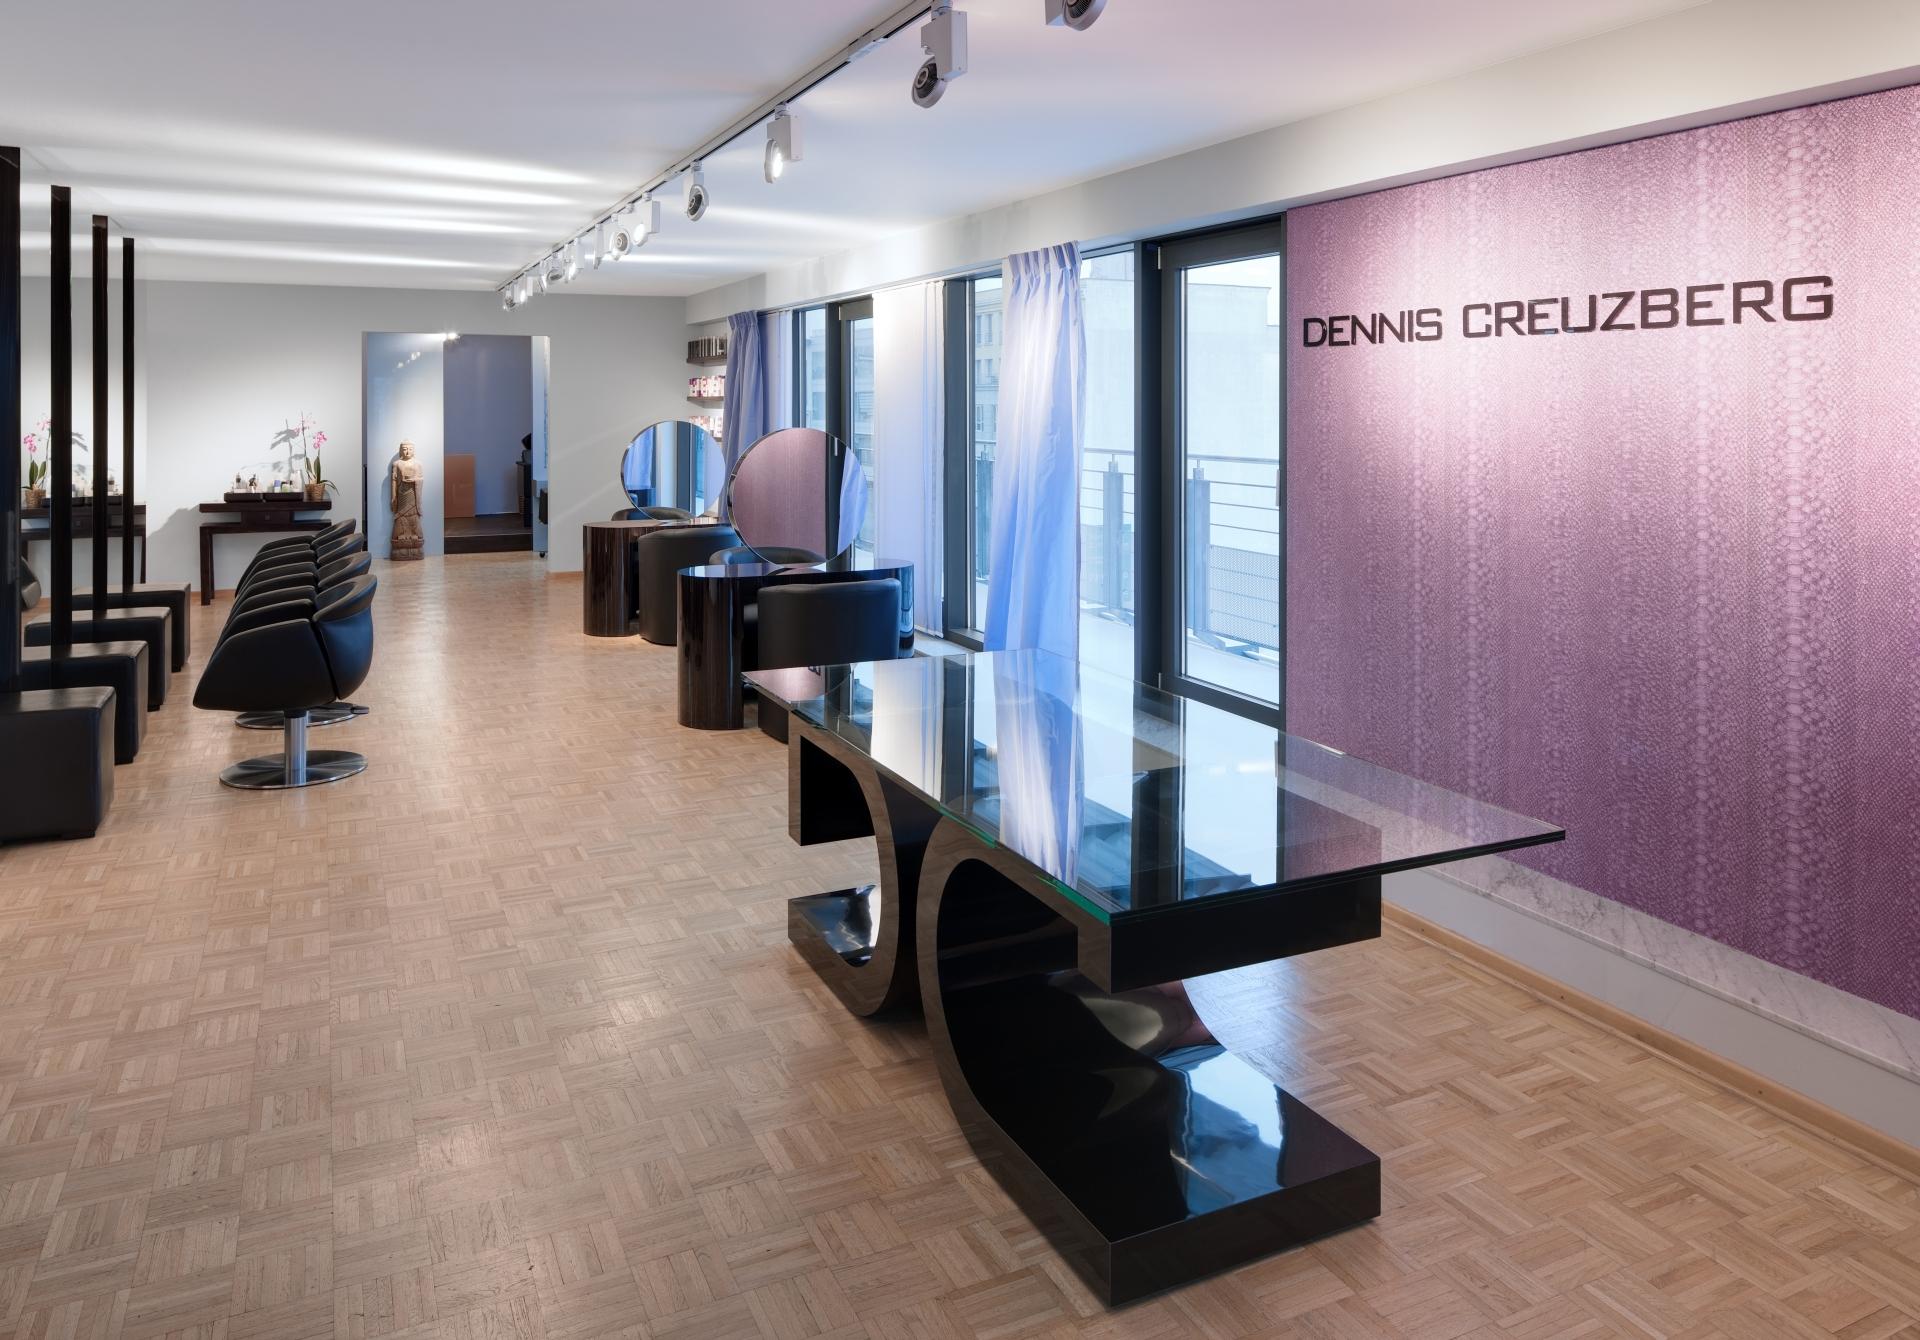 Salon Dennis Creuzberg #empfangsraum #penthouse #empfangstresen ©www.berlinrodeo.com